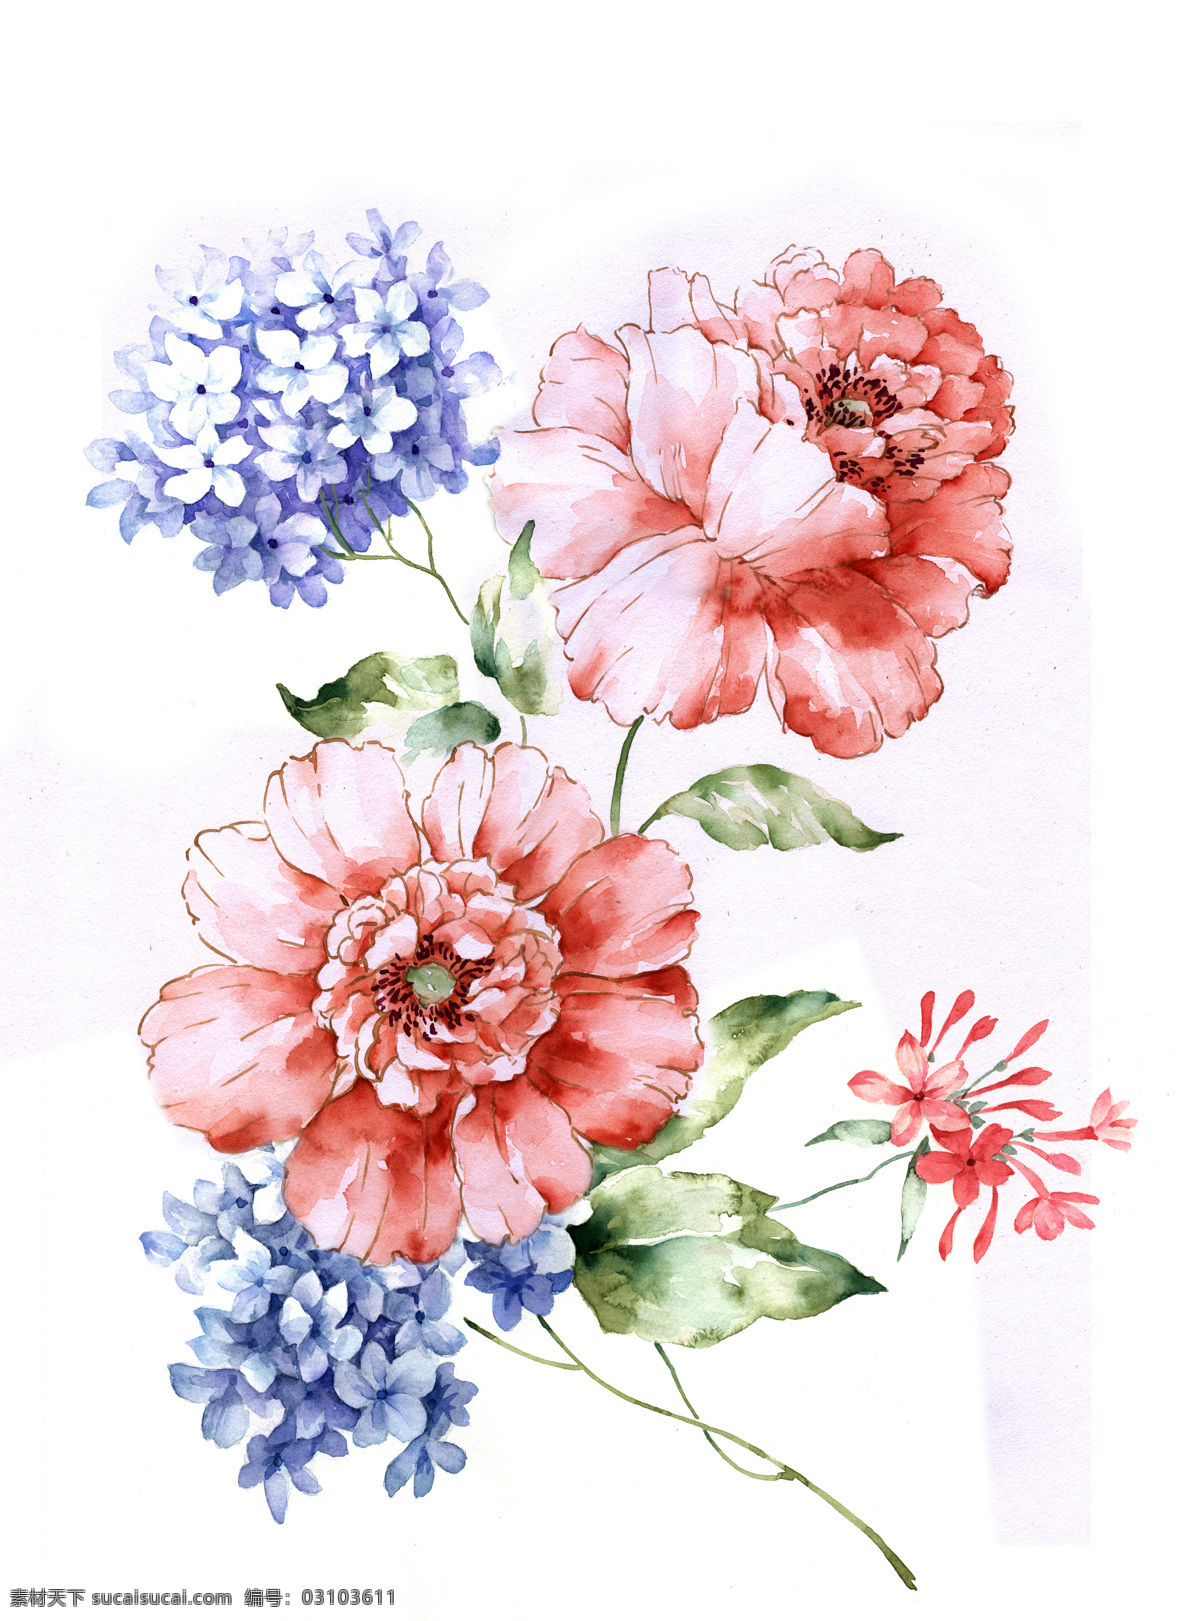 花卉 绘画书法 满天星 玫瑰 手绘 手绘花卉 水彩 设计素材 模板下载 文化艺术